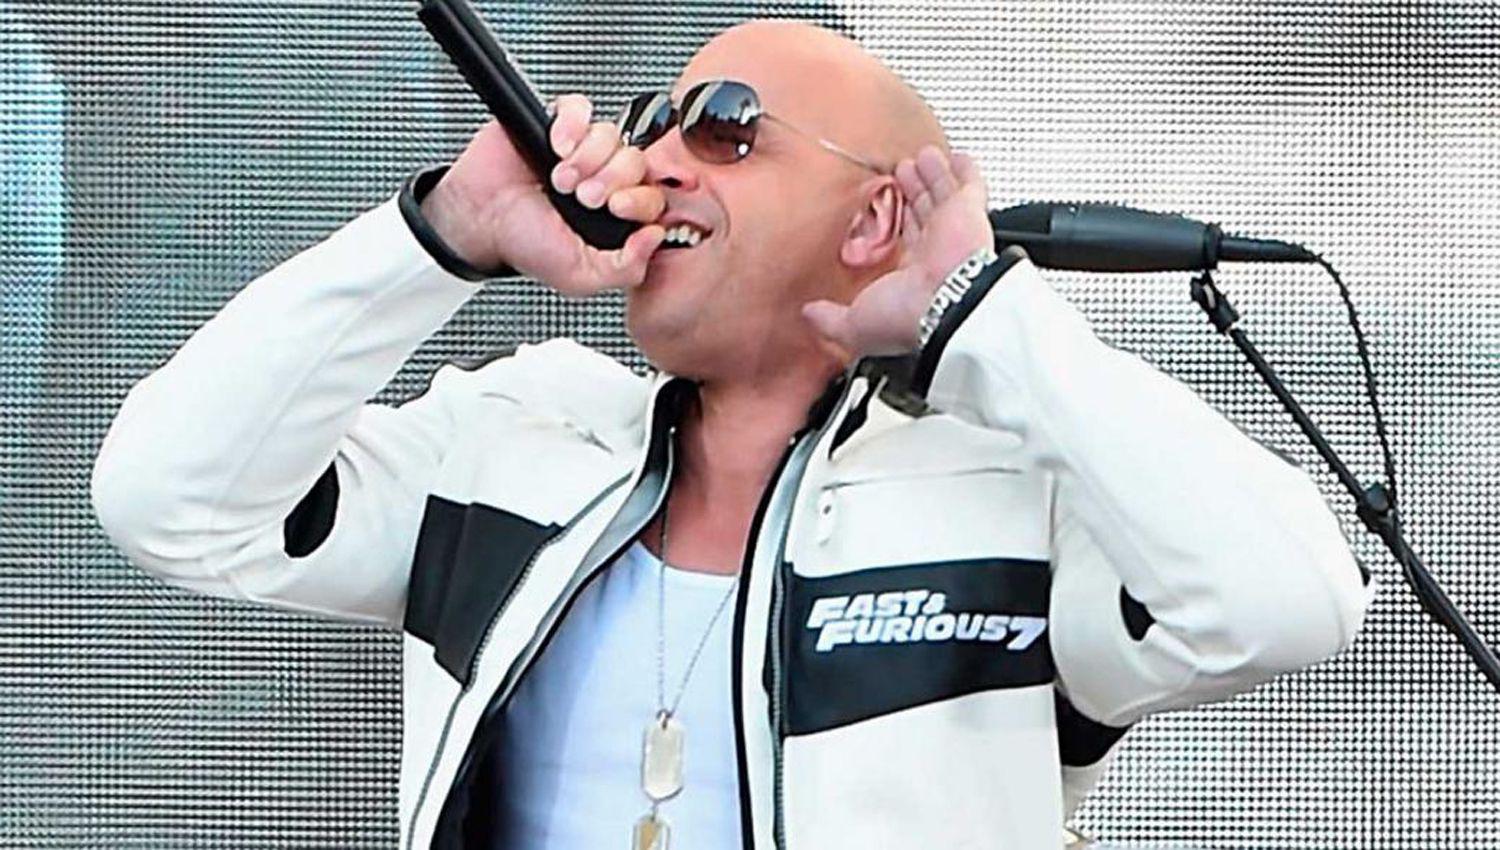 ldquoTorettordquo Vin Diesel deja el rugir de los motores de ldquoRaacutepido y Furiosordquo para subirse a un escenario para asumir otro tipo de ldquopeleasrdquo- cantar